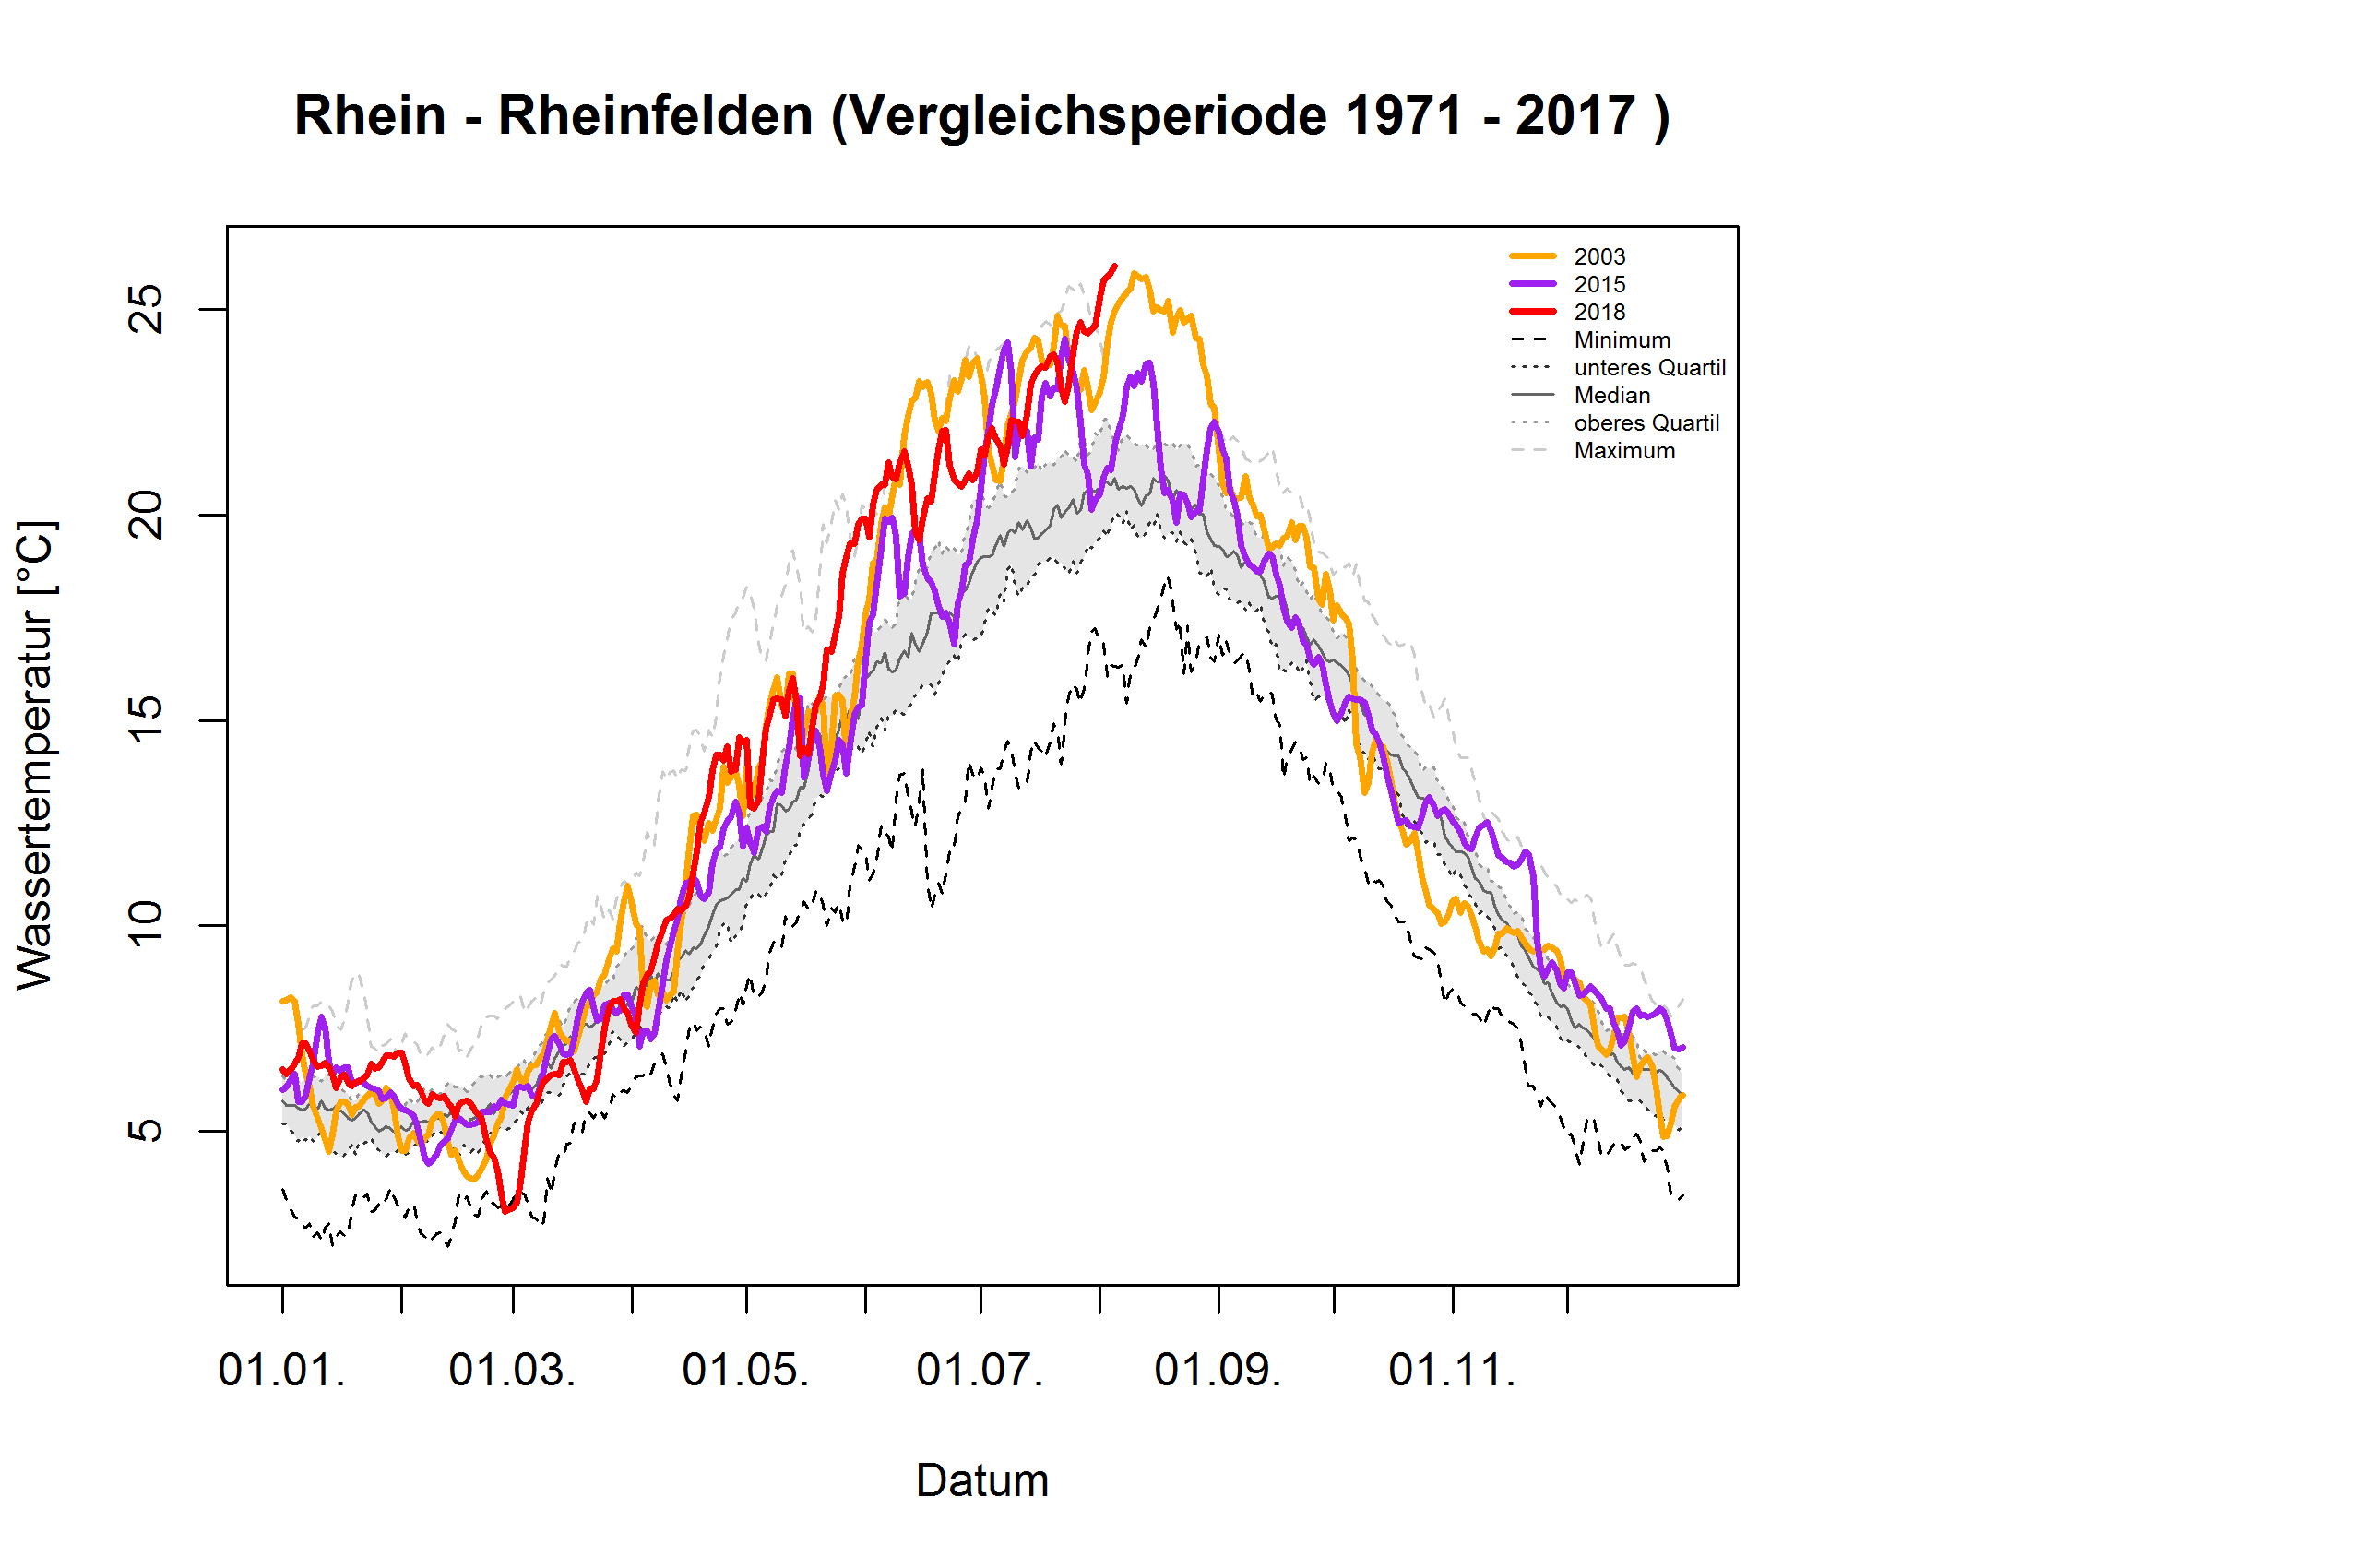 Rhein - Rheinfelden: Vergleichsperiode 1971 - 2017